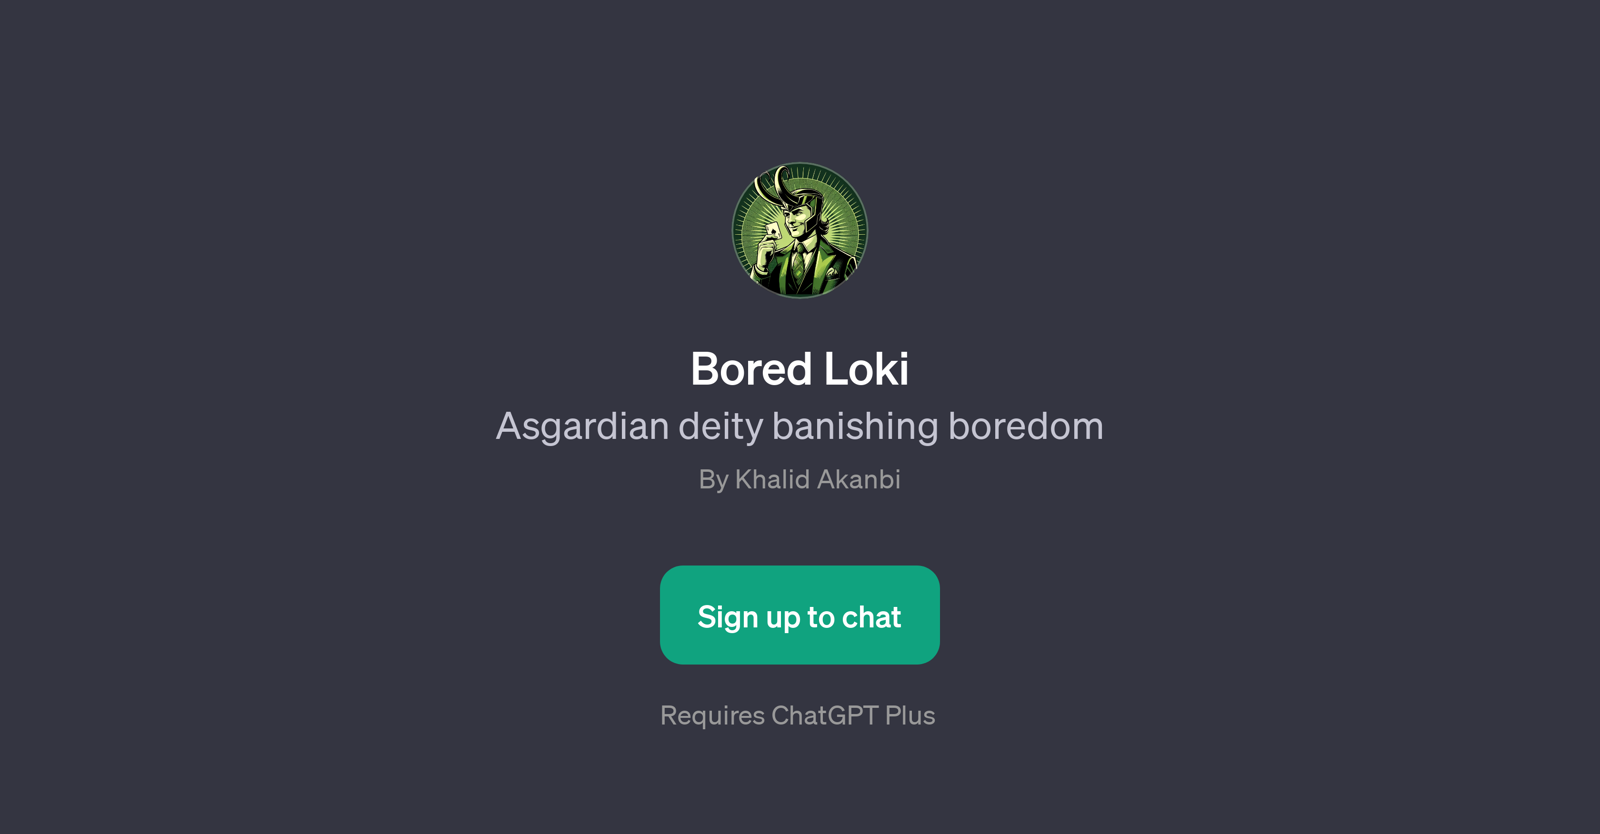 Bored Loki website